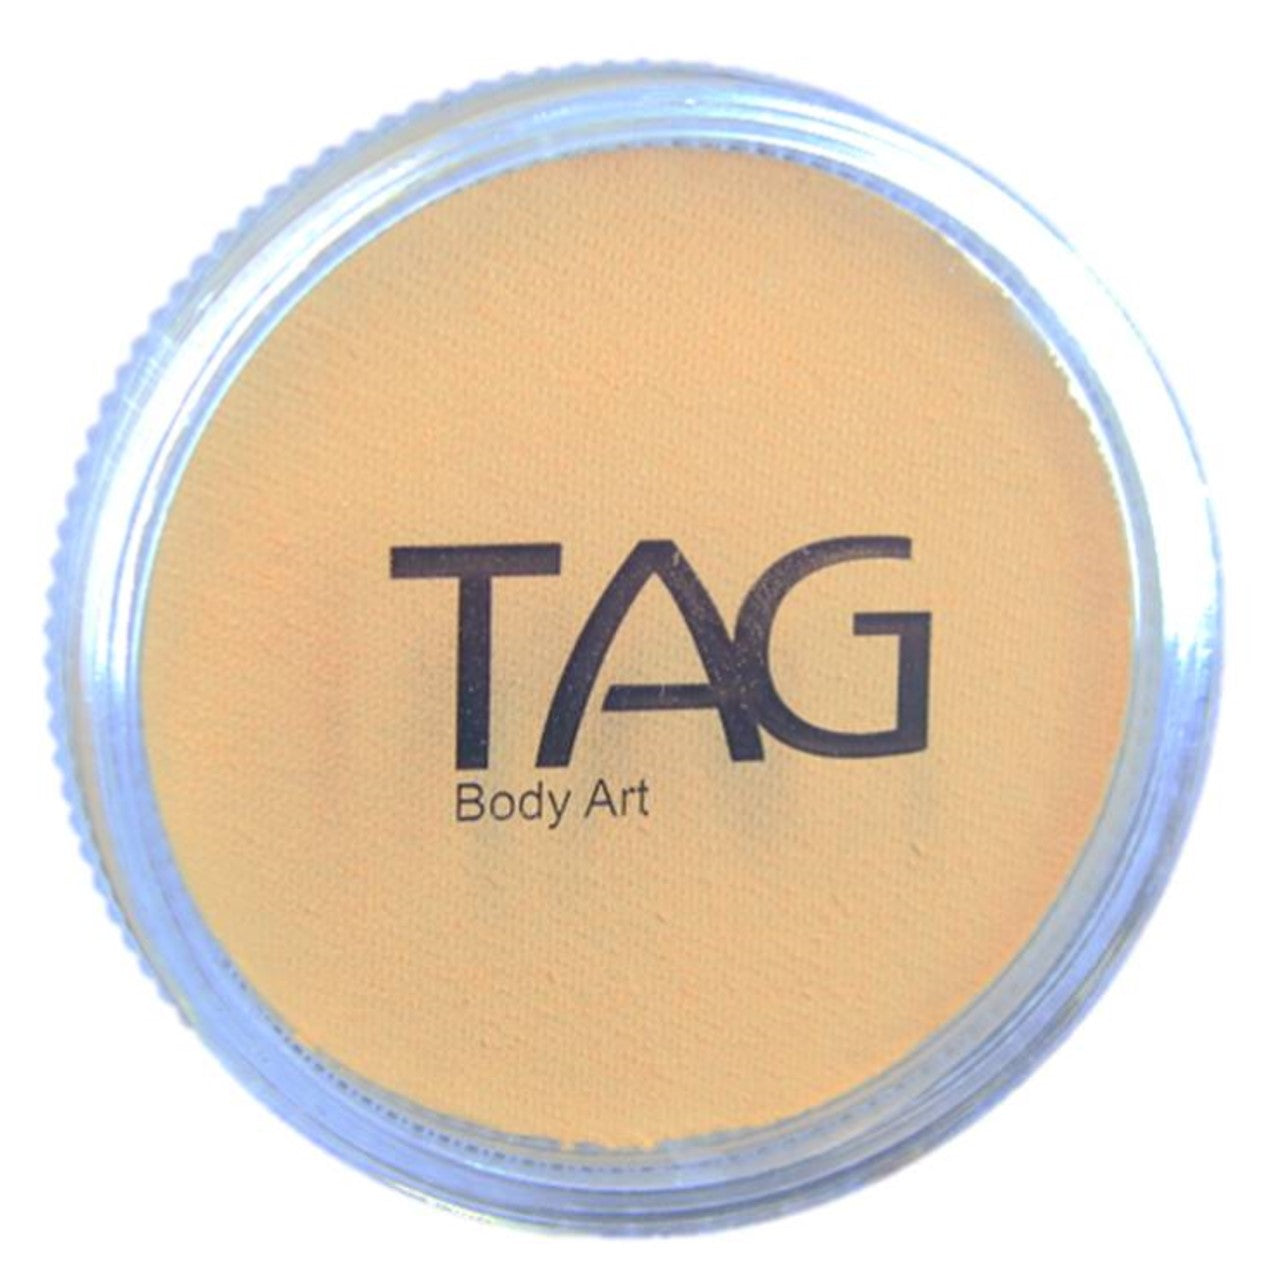 TAG Face Paint - Pearl Orange 32gr — Jest Paint - Face Paint Store